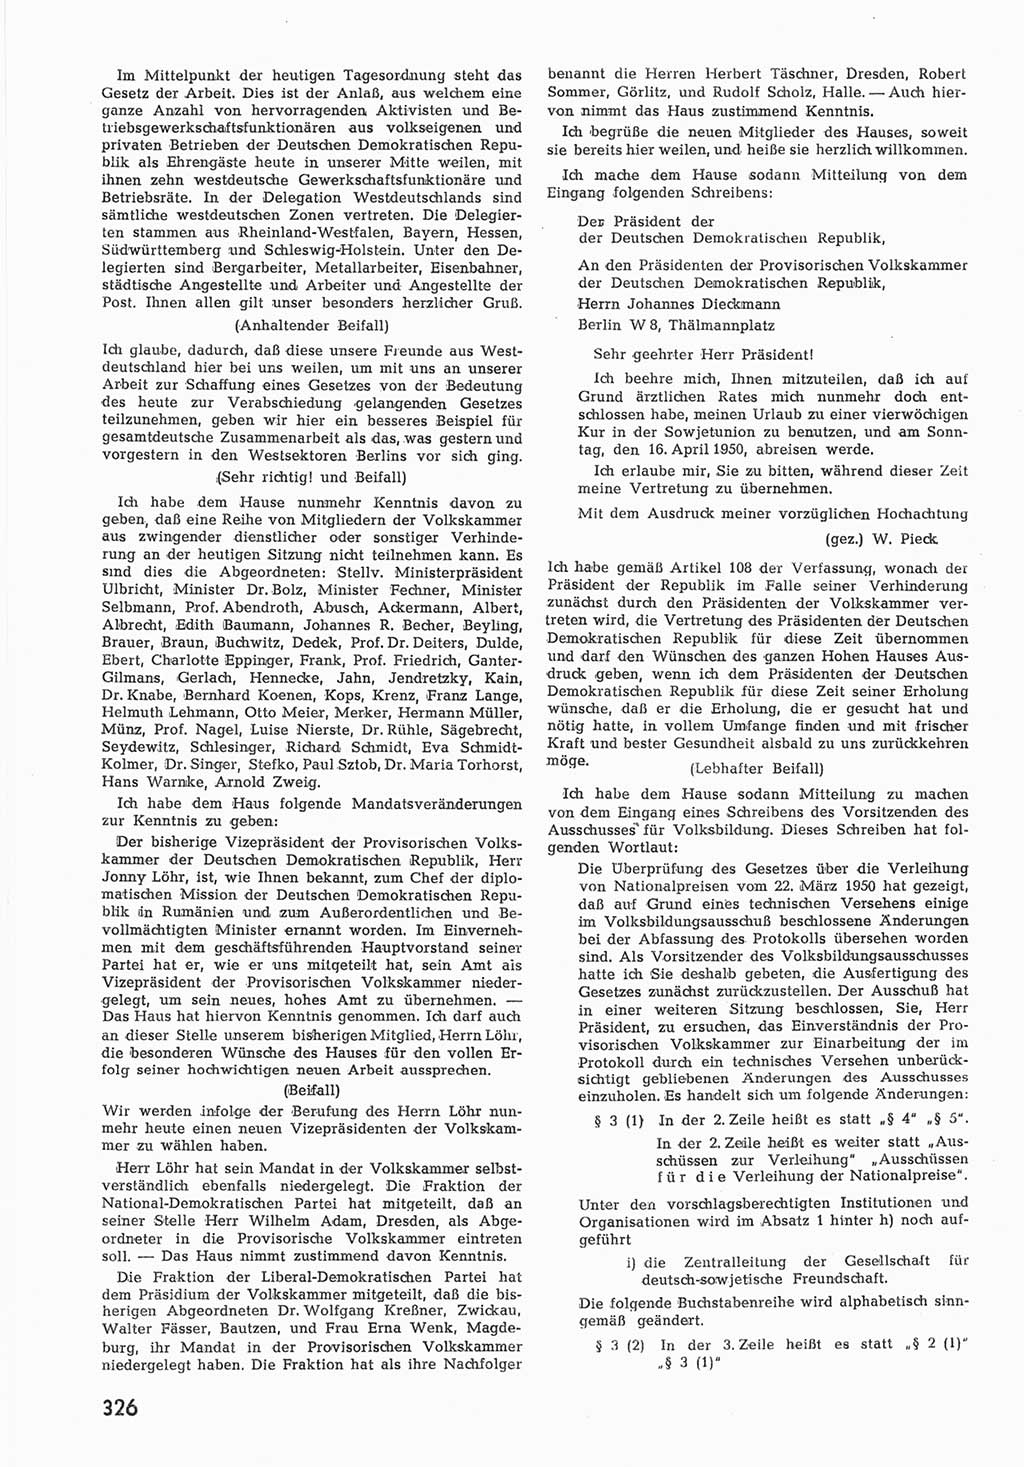 Provisorische Volkskammer (VK) der Deutschen Demokratischen Republik (DDR) 1949-1950, Dokument 340 (Prov. VK DDR 1949-1950, Dok. 340)